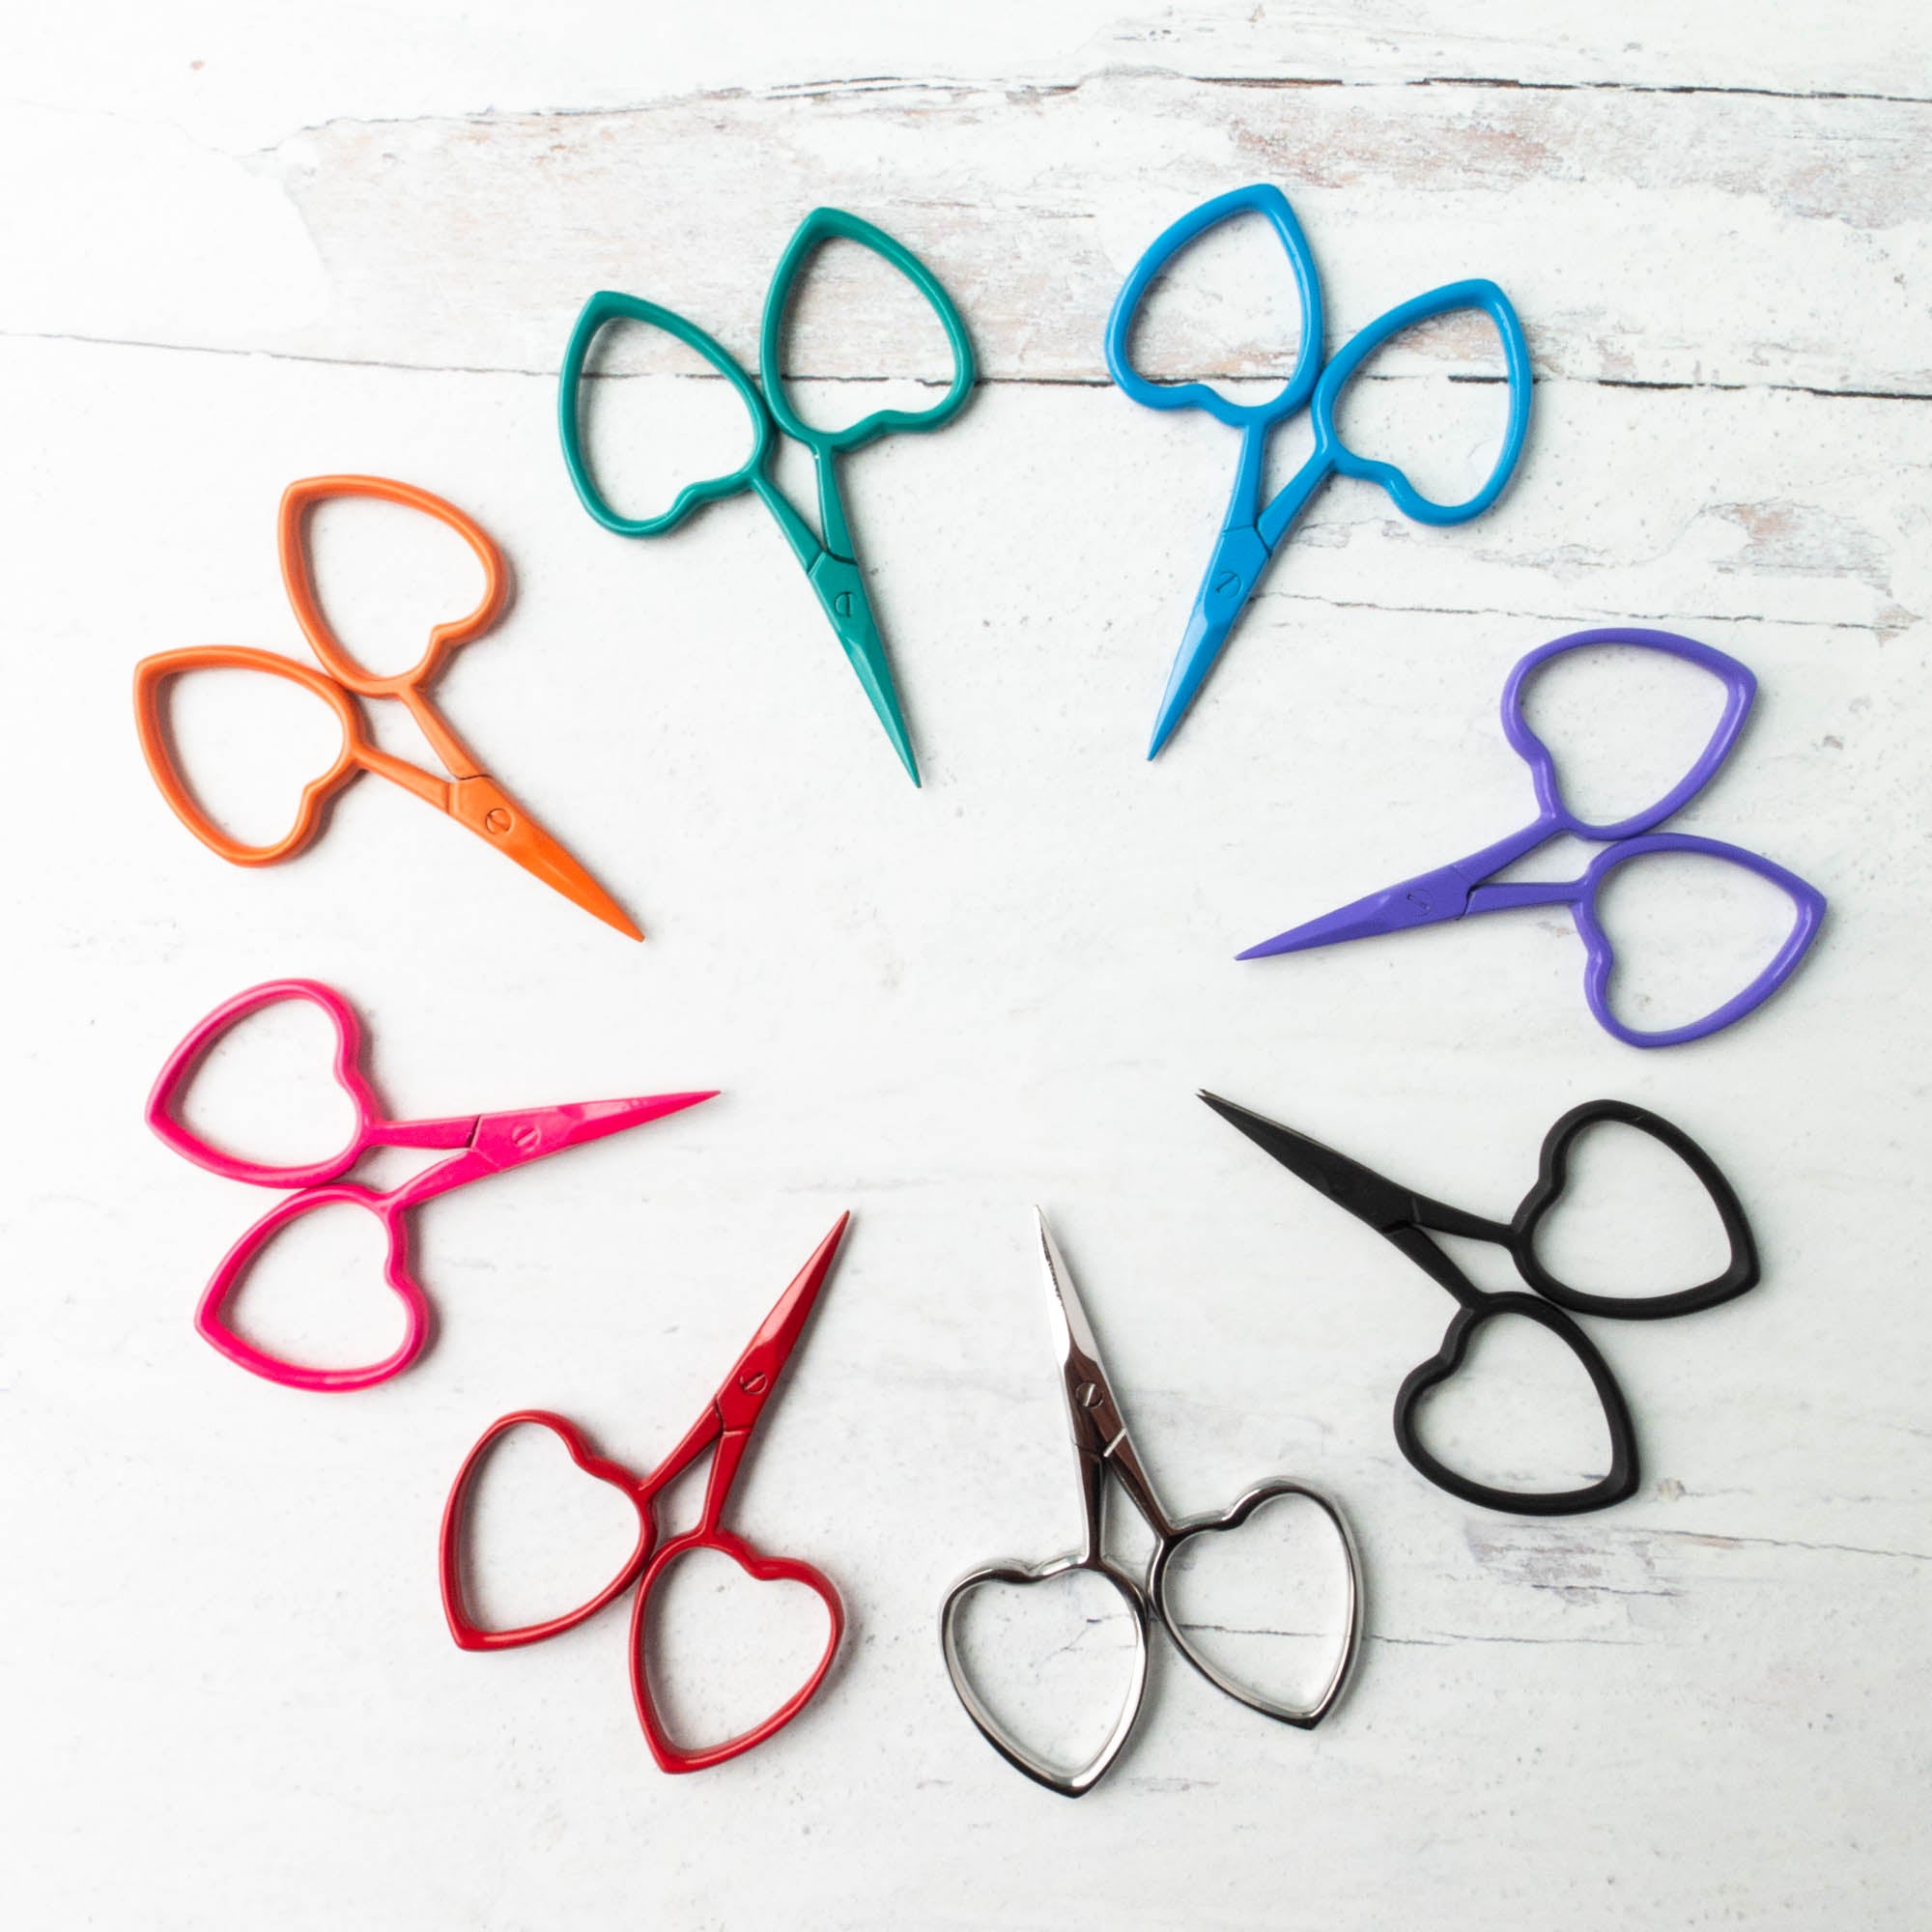 Mini Embroidery Scissors - Dandelion Stitchery